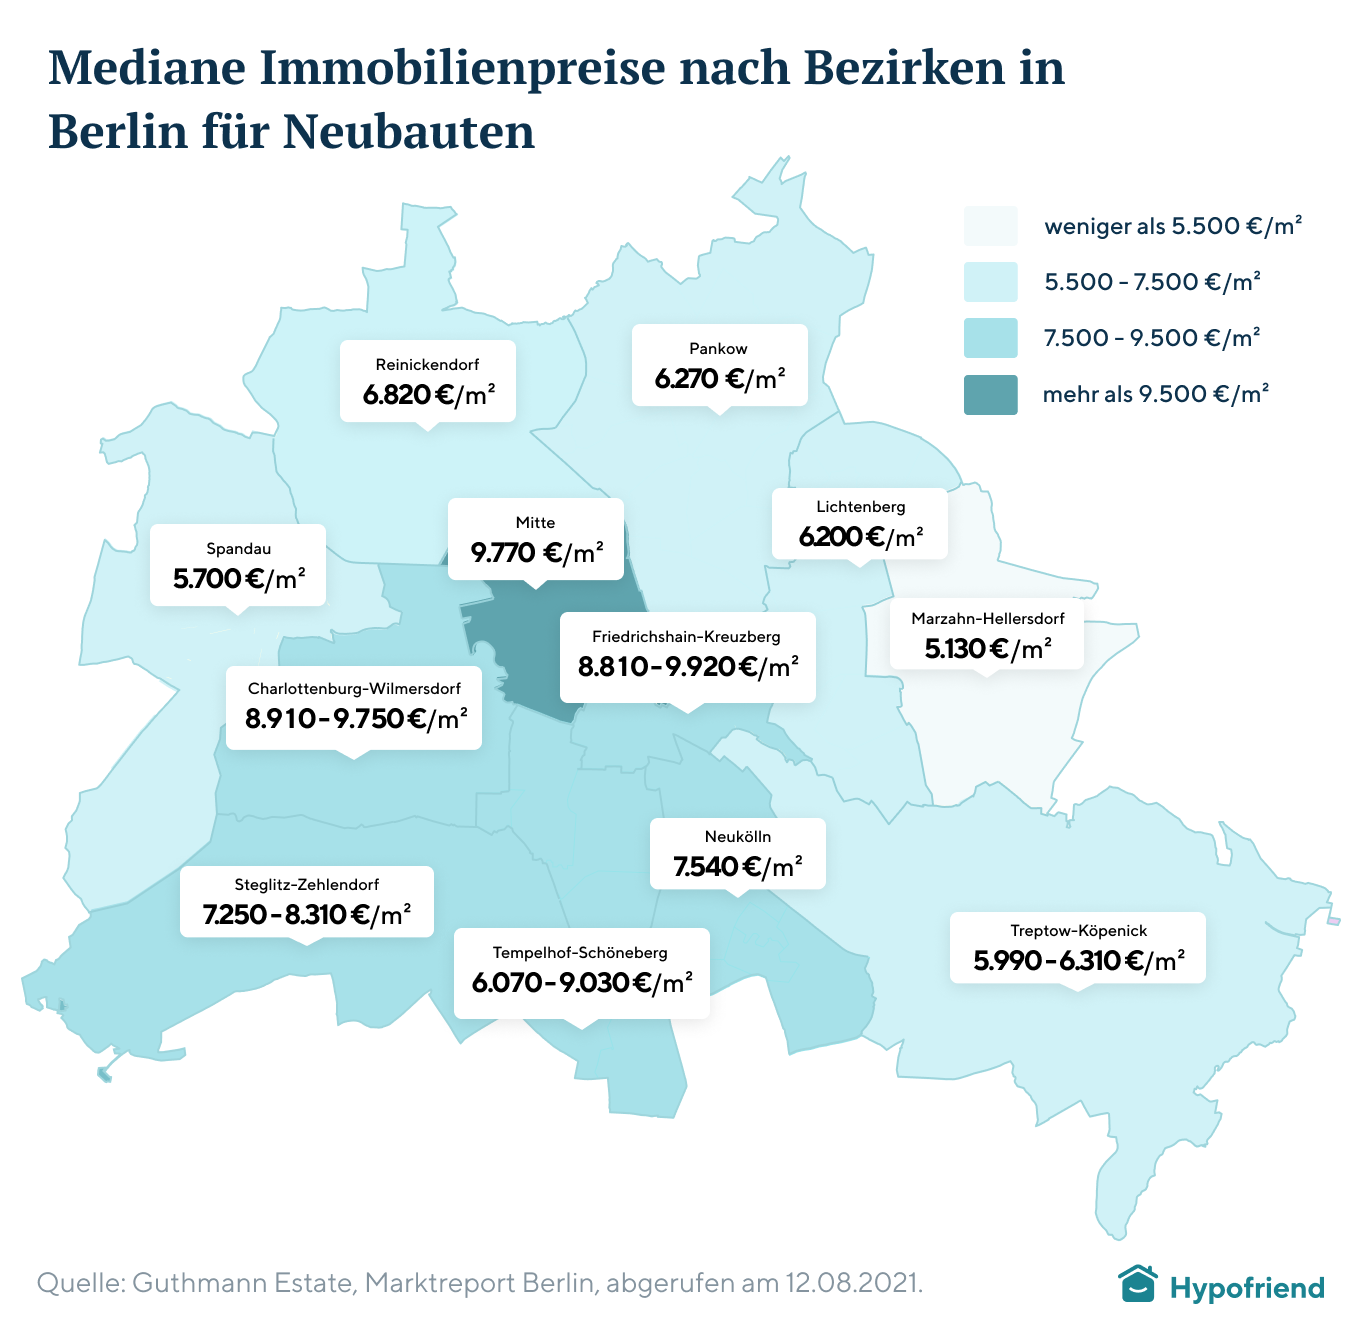 Mediane Immobilienpreise nach Bezirken in Berlin für Neubauten